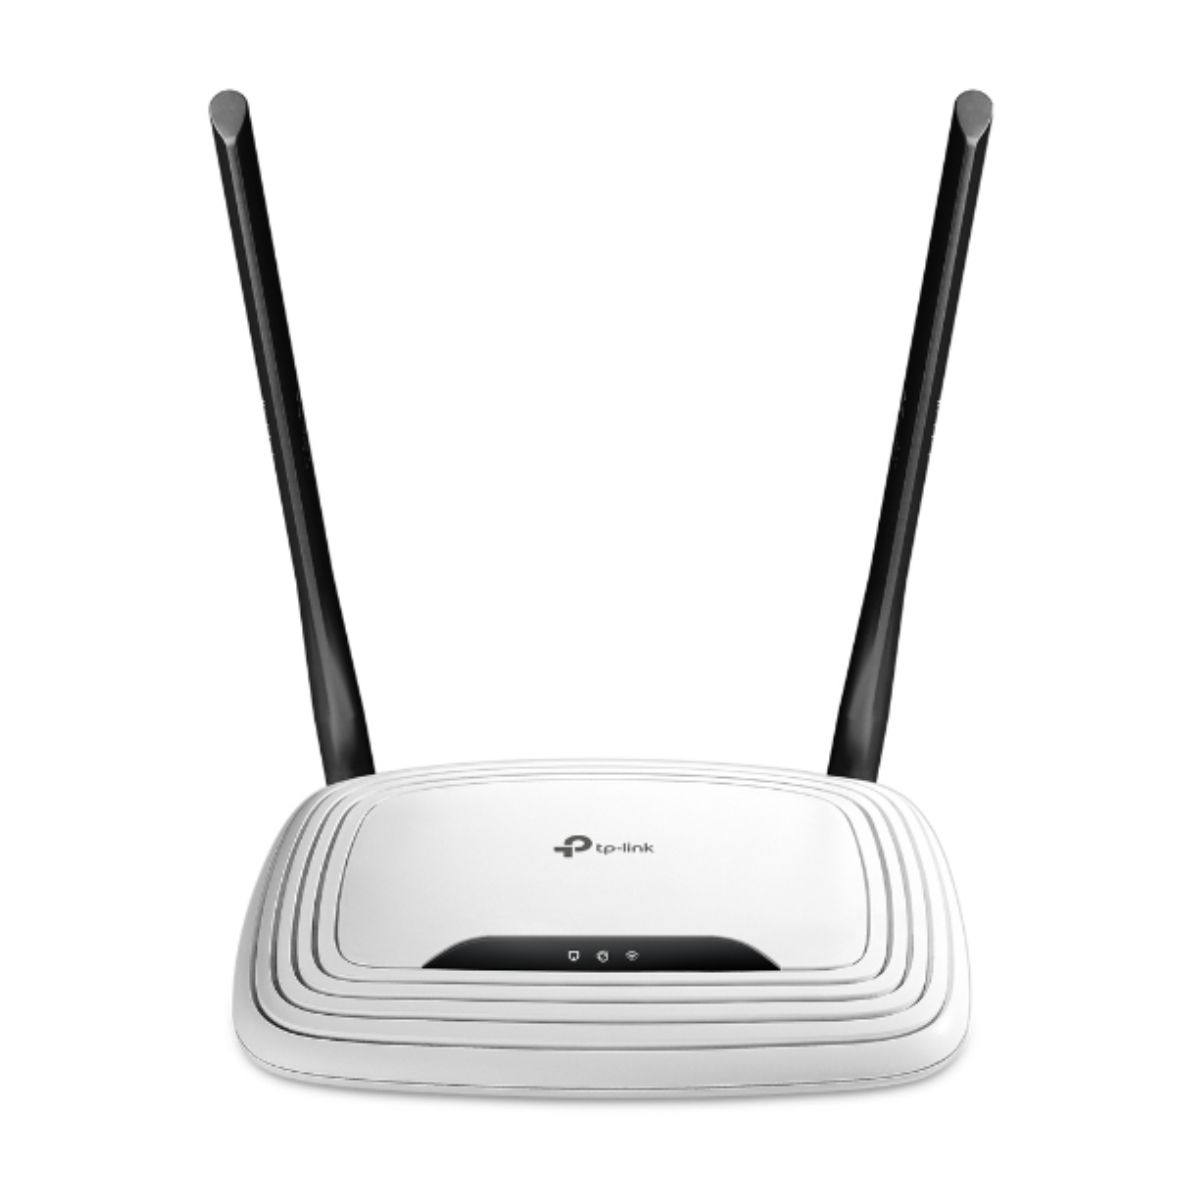 Router Wi-Fi chuẩn N tốc độ 300Mbps TP-Link TL-WR841N chuẩn IEEE 802.11n, tương thích với IPv6